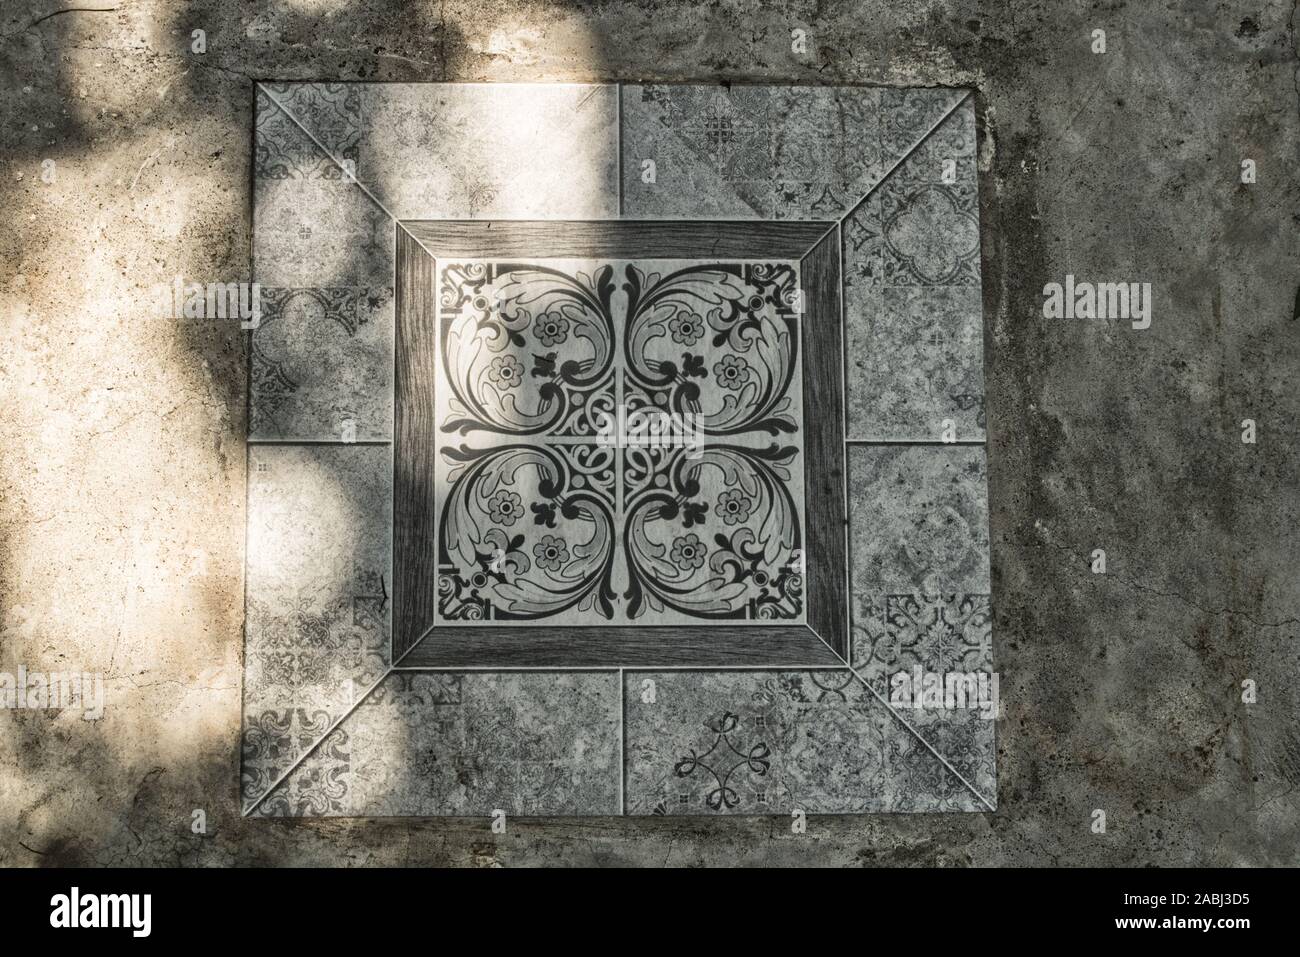 Dieses einzigartige Foto zeigt eine schöne Bodenfliese mit einem großartigen arabischen Muster! Stockfoto